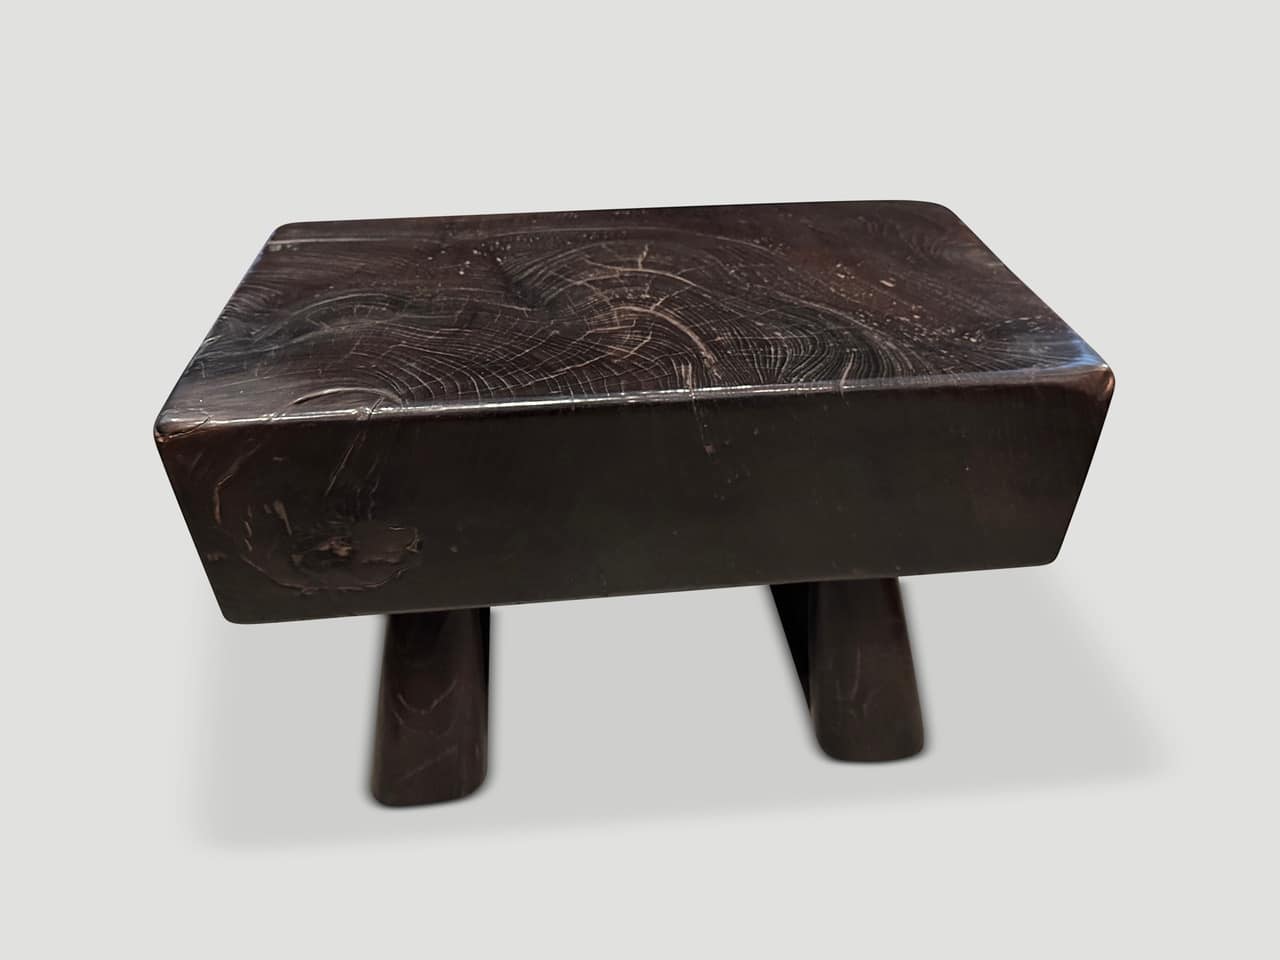 teak wood log side table or bench